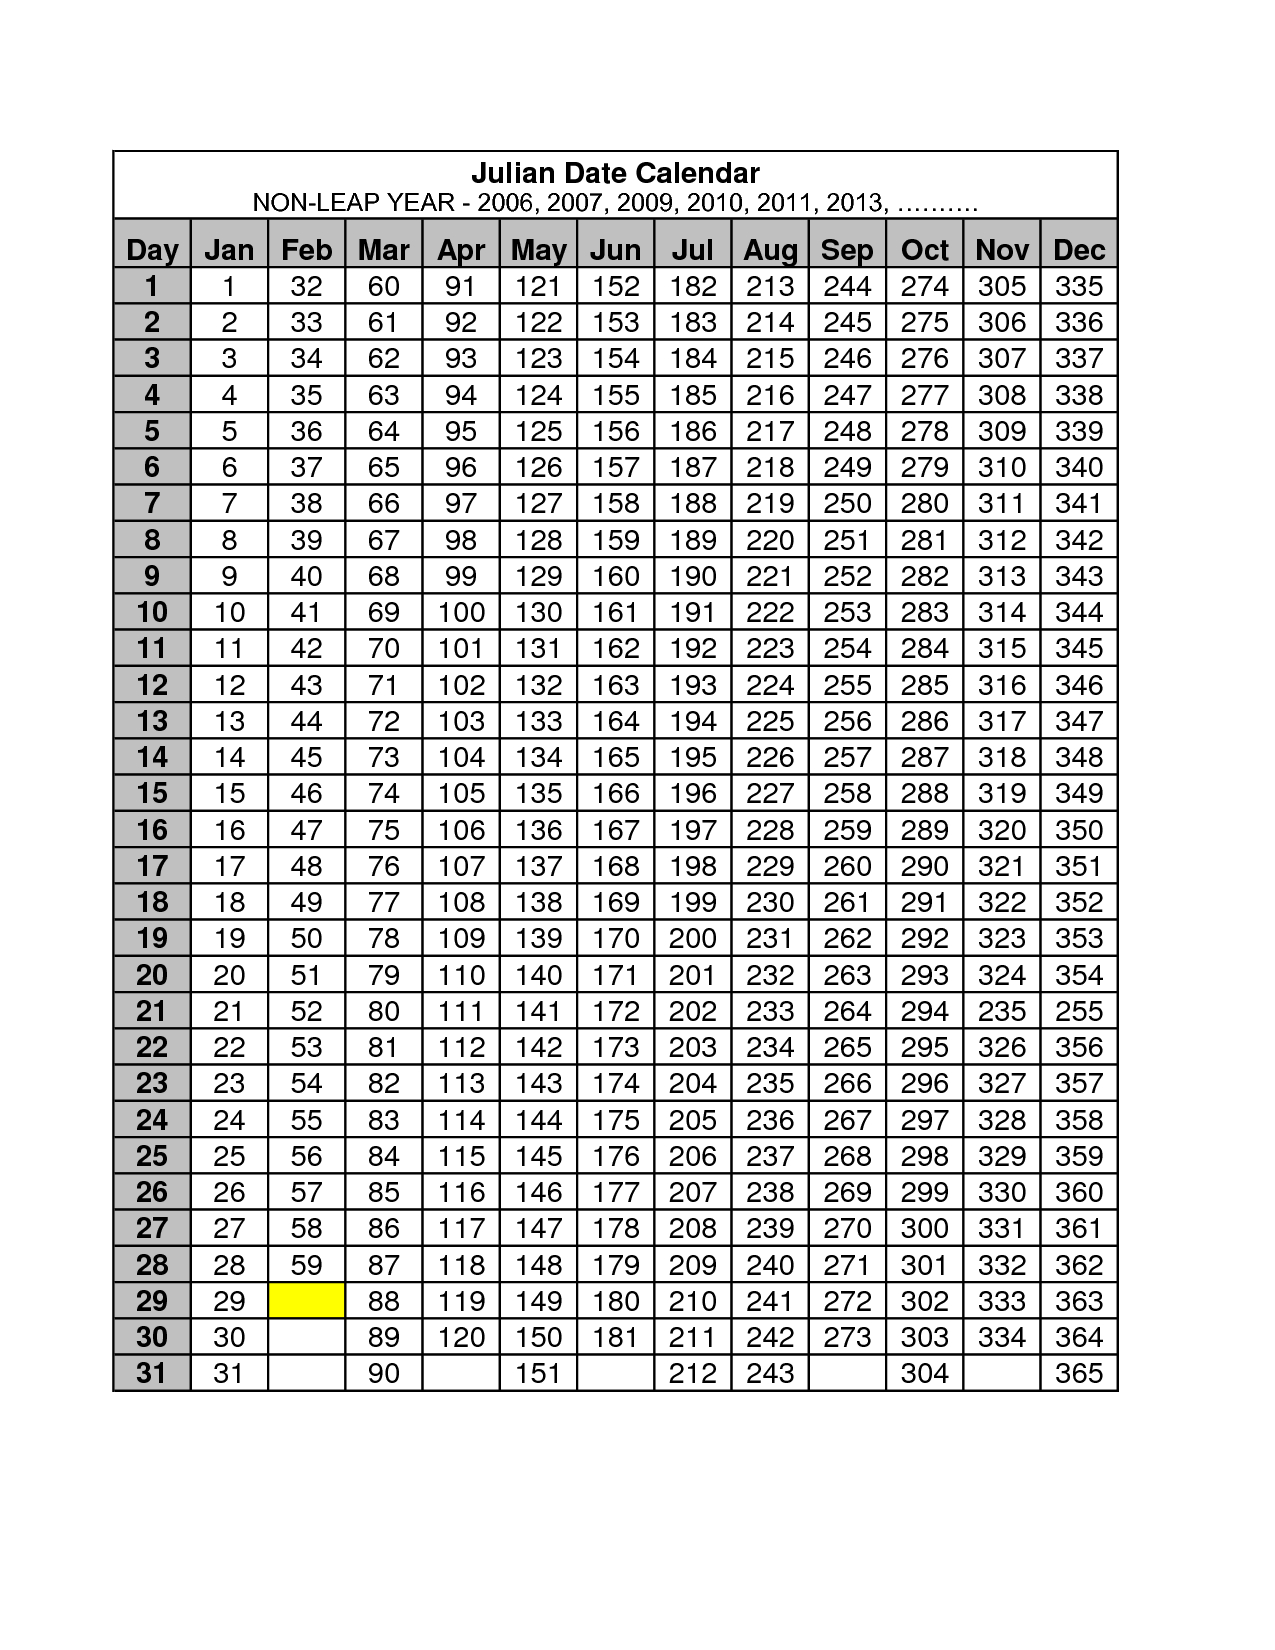 2013 Julian Date Calendar Quadax | Calendar Blank For May 2015 inside Quadax Julian Date Calendar 2020